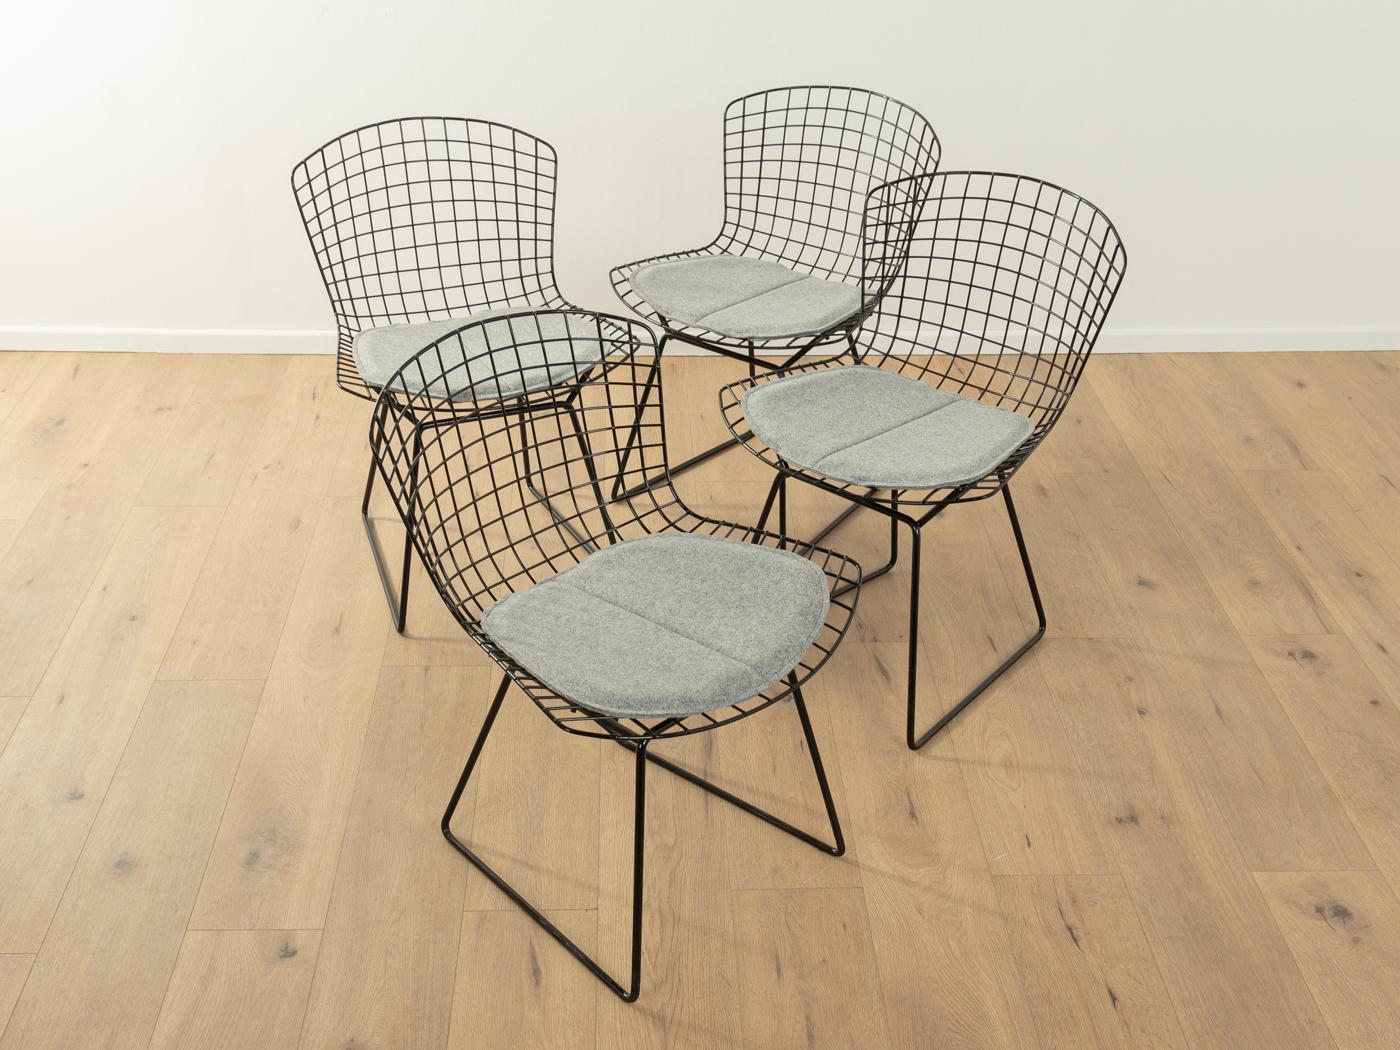 BERTOIA-Stuhl, Modell 420, entworfen in den 1940er Jahren von Harry Bertoia für Knoll. Rahmen aus Drahtgeflecht mit neuem Filzbezug in Grau. Das Angebot umfasst 4 Stühle.

Qualitätsmerkmale:

    sehr gute Verarbeitung
    hochwertige MATERIALIEN
  